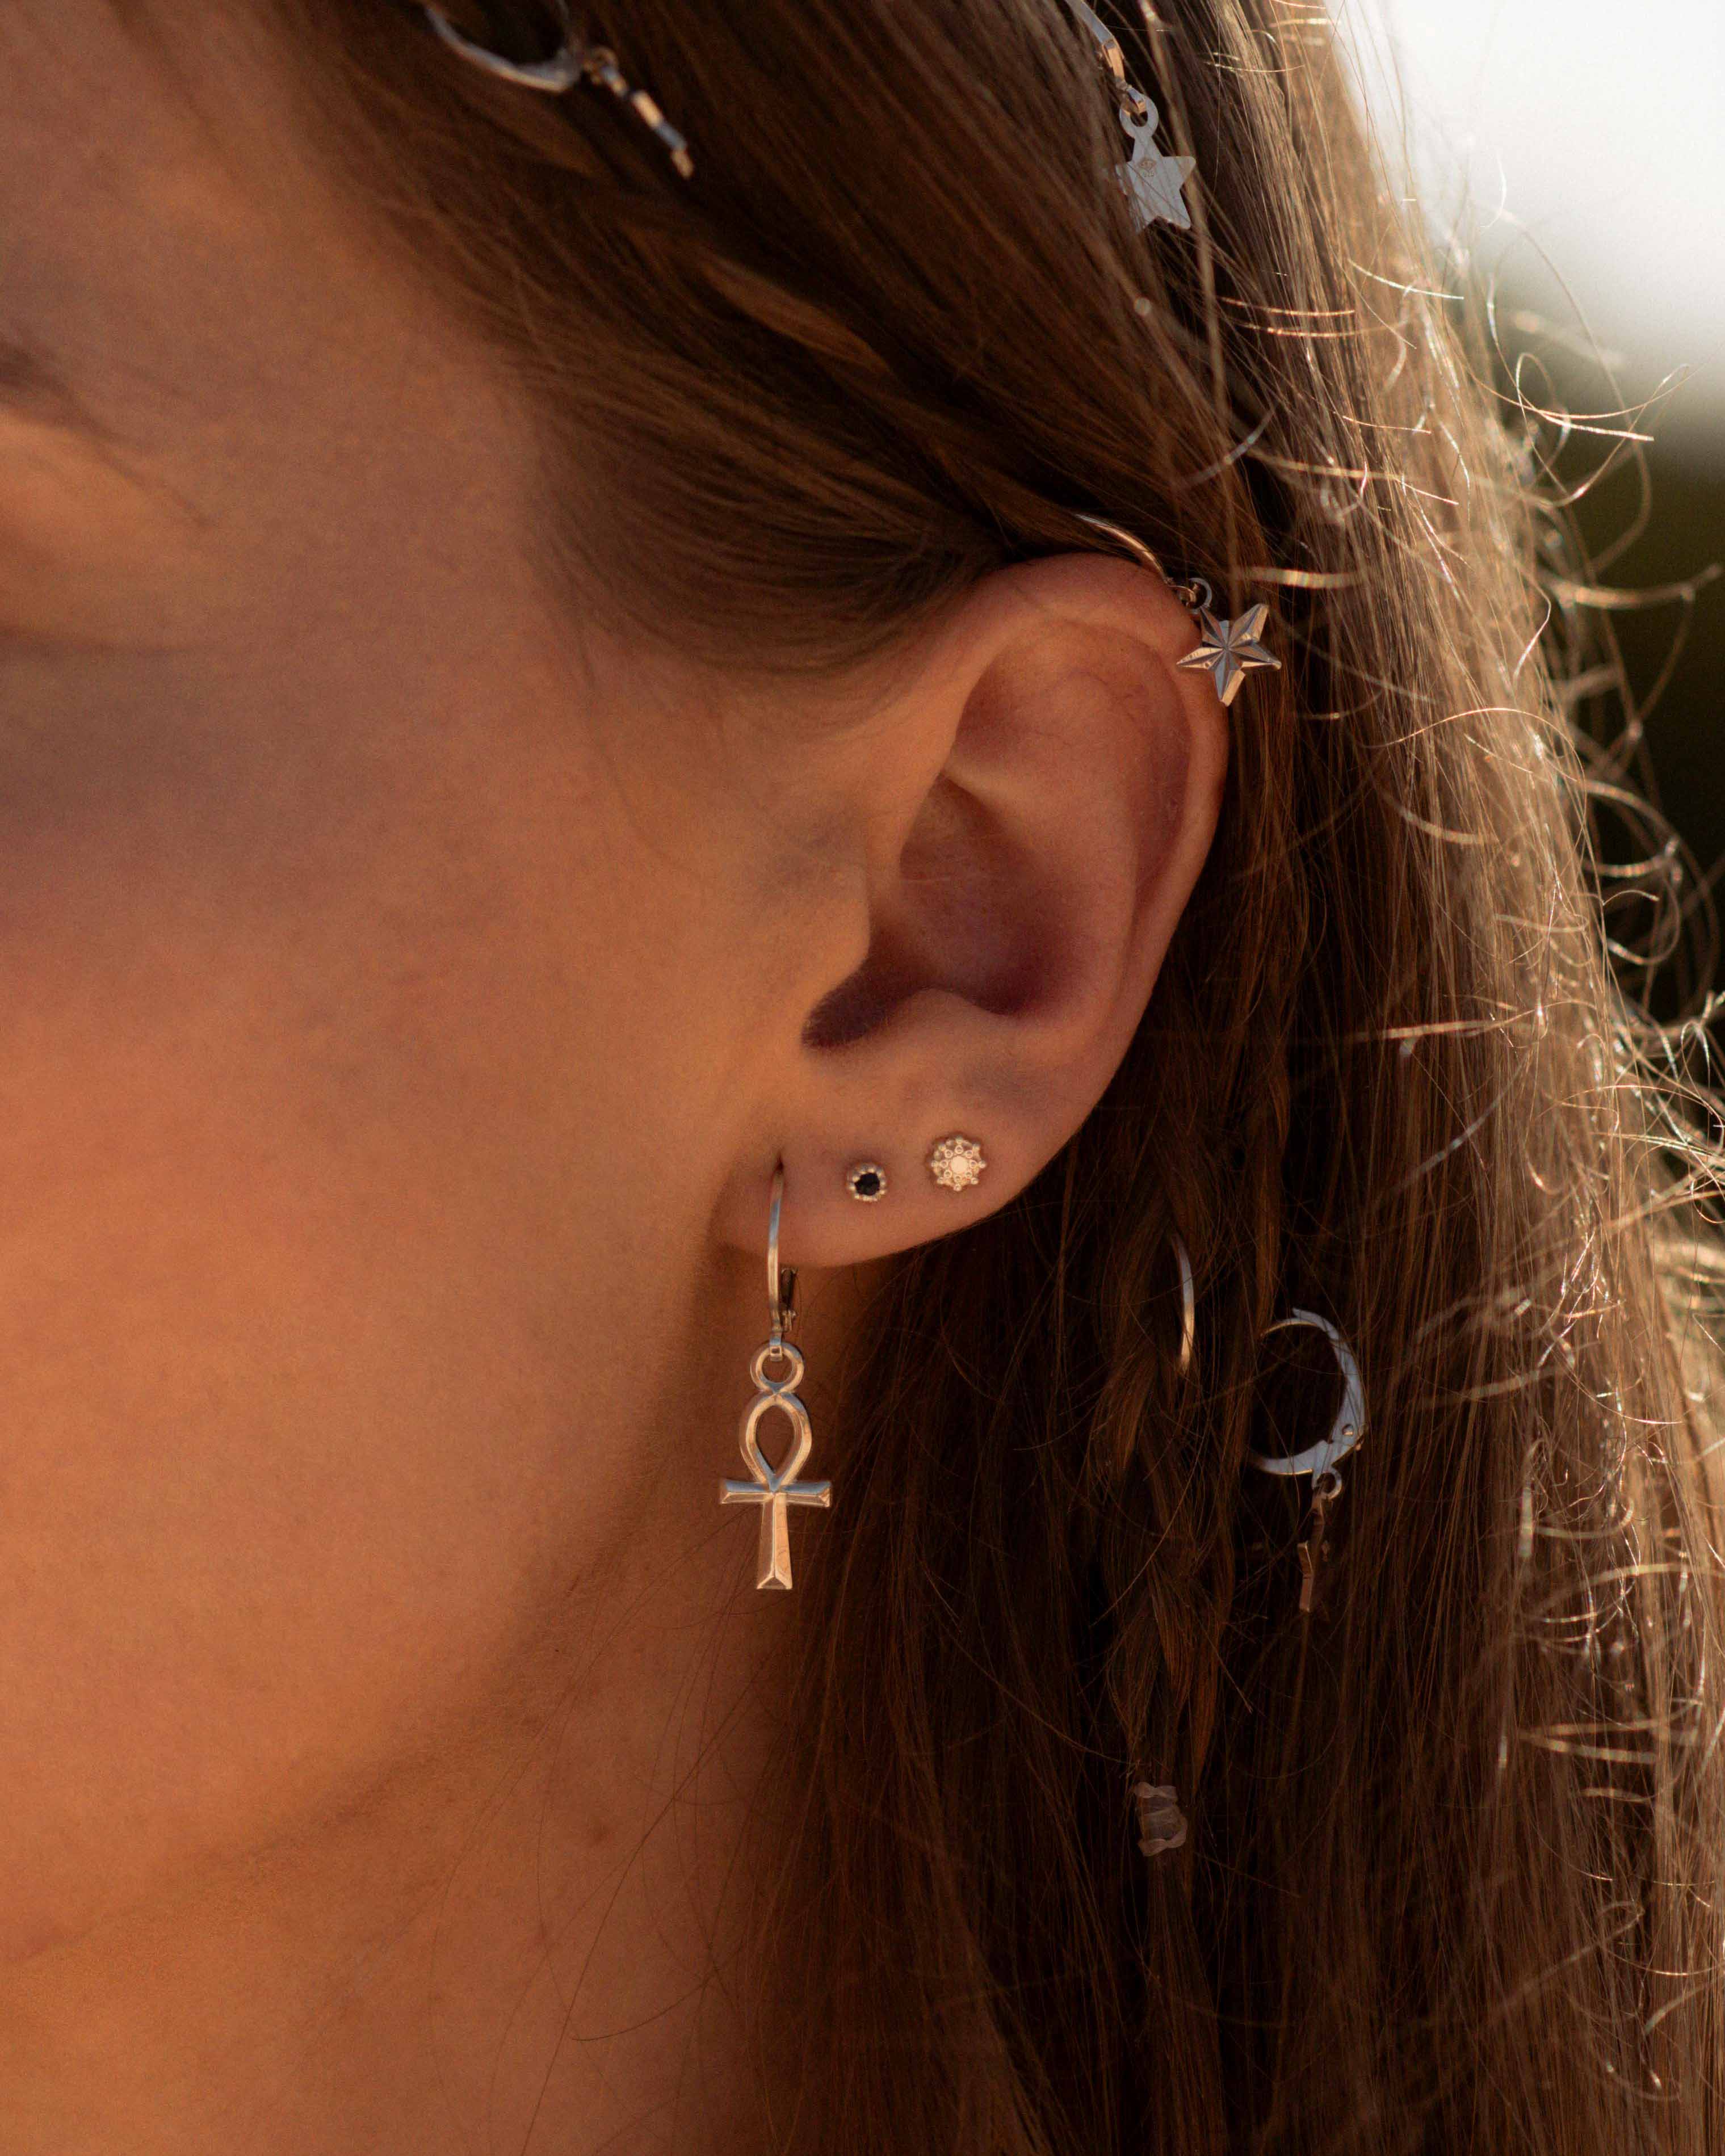 Association de boucles d'oreilles en argent massif 925, composée d'une dormeuse en croix égyptienne, d'une petite puce en onyx, et d'une petite puce au design soleil, fabriquées en France.